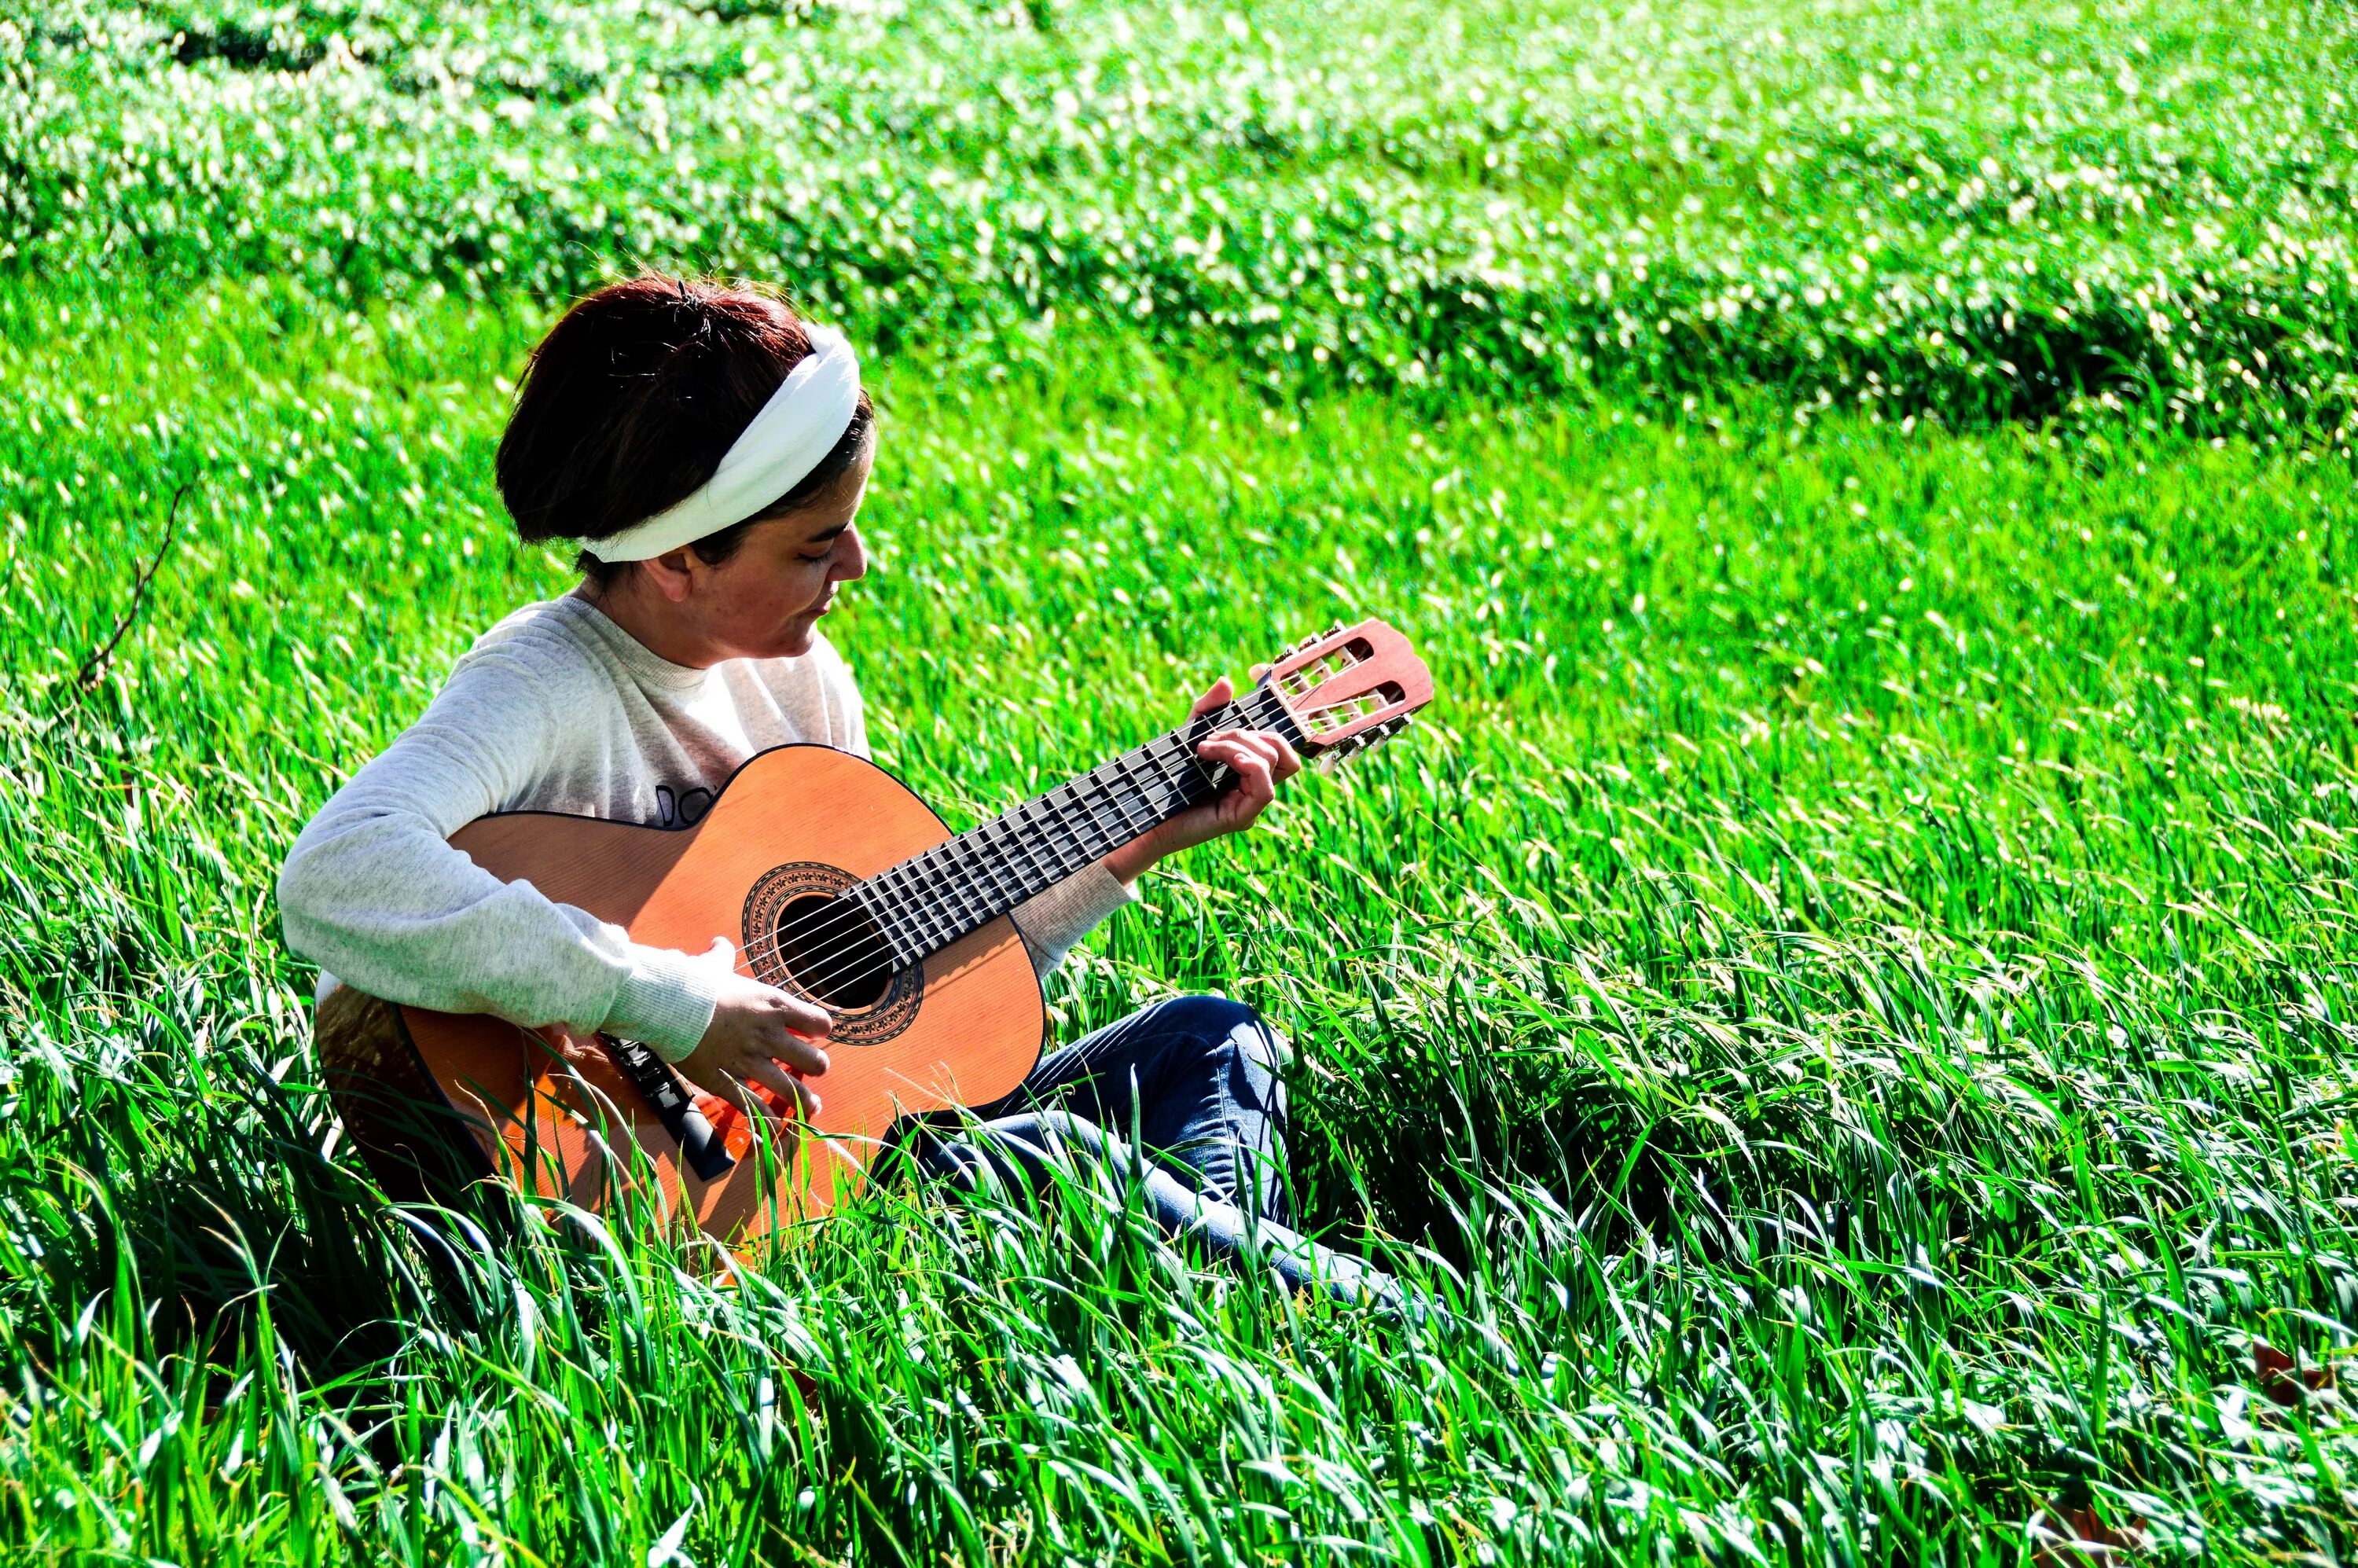 Сыграть на гитаре в траве. Фотосессия с гитарой на природе. Девочка с гитарой. Девушка с гитарой на траве. Гитара на природе.